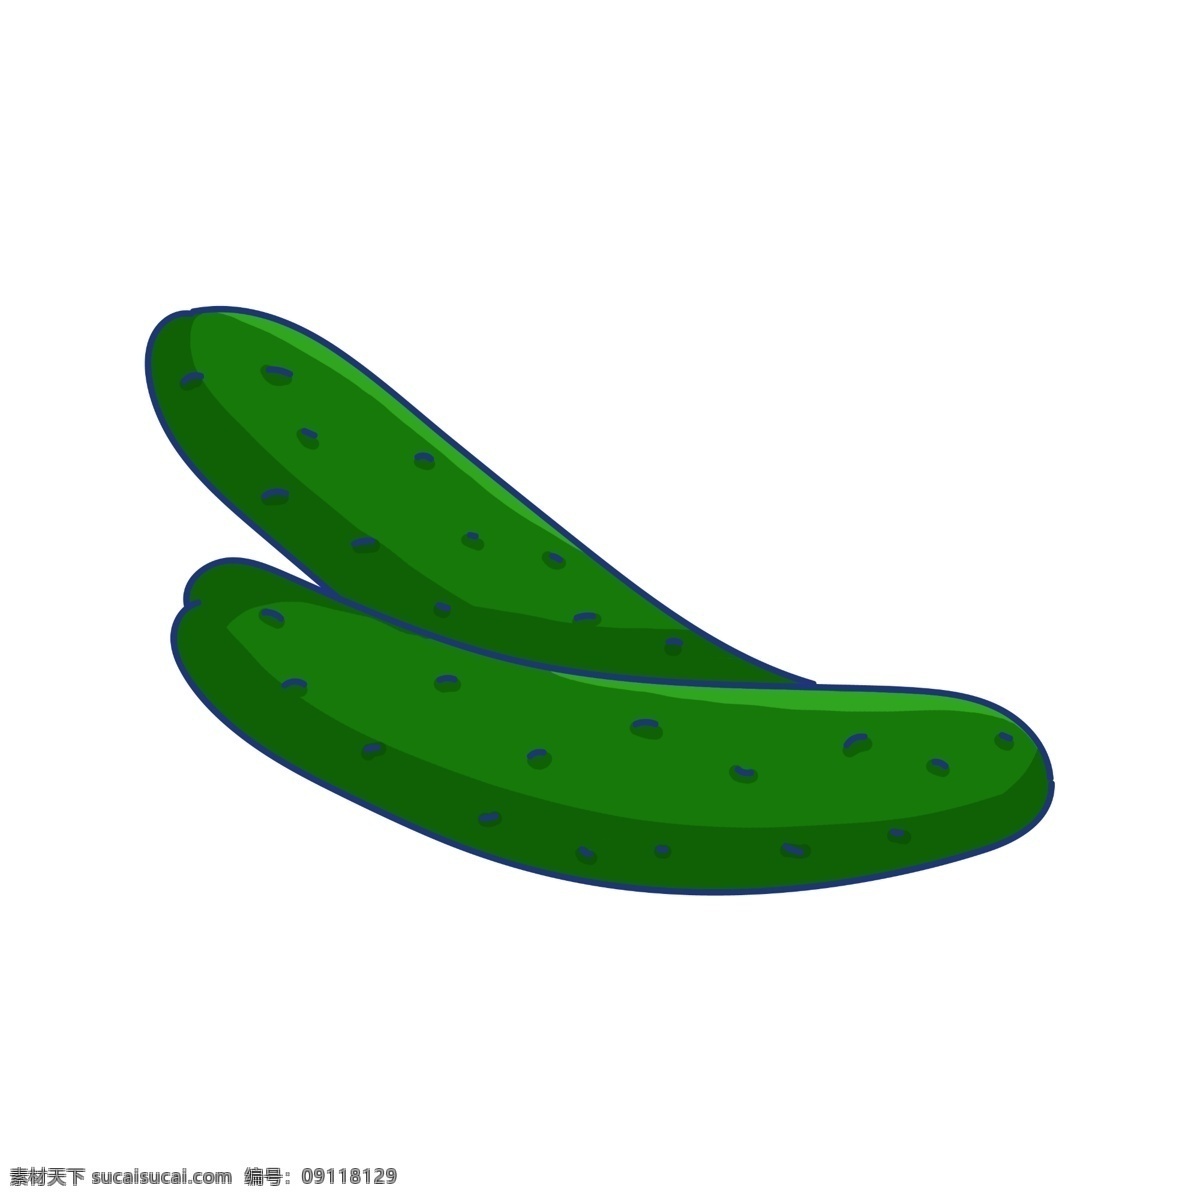 绿色 手绘 黄瓜 插画 食物 绿色食品 天然 瓜果 健康食品 绿色的蔬菜 卡通黄瓜 手绘黄瓜